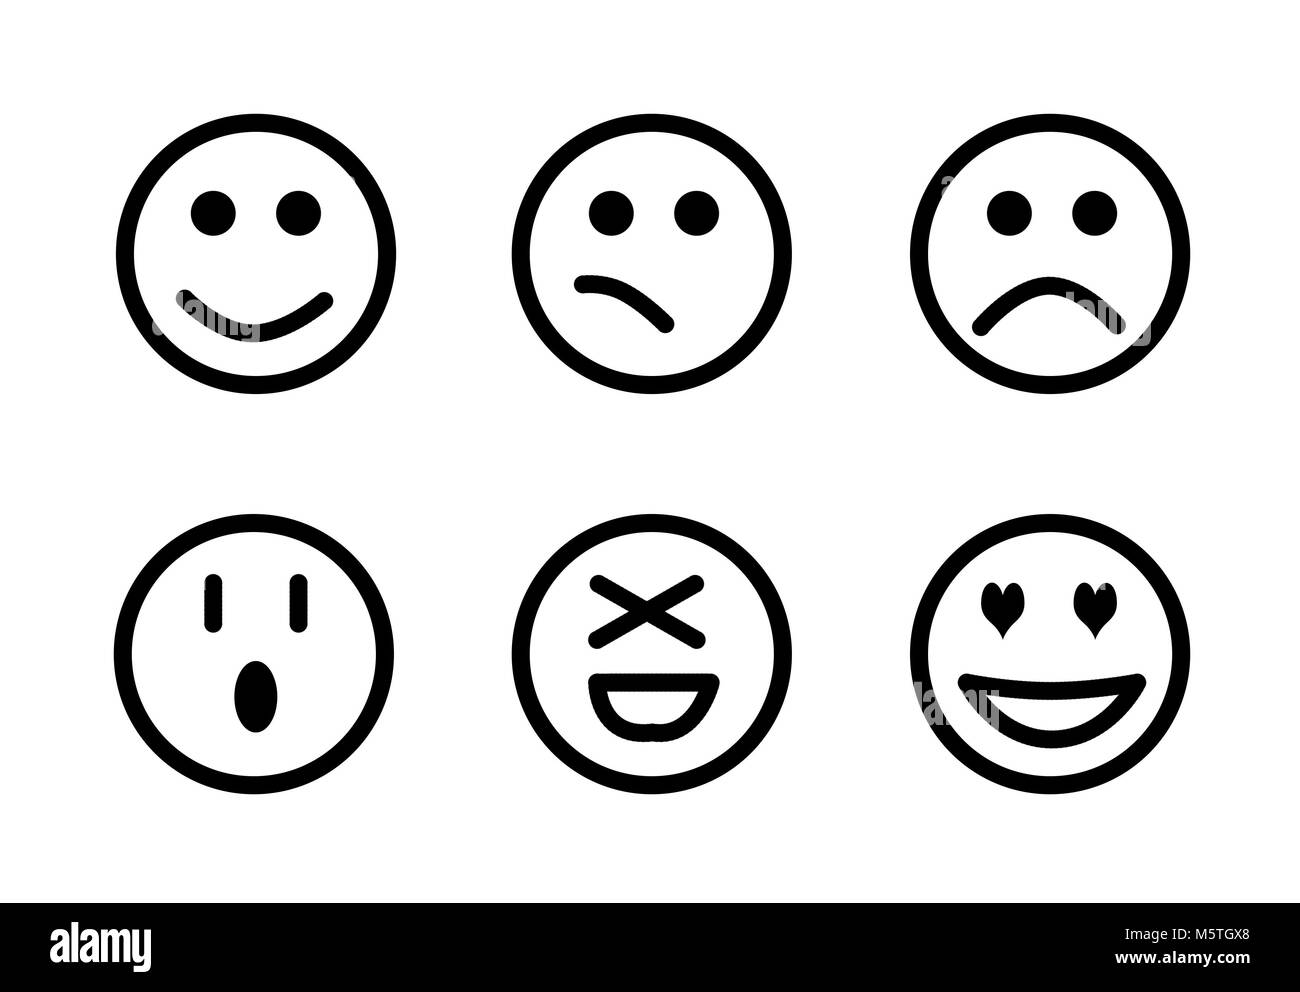 Set of emoji, Smileys set. Isolated faces expression illustration Stock Photo